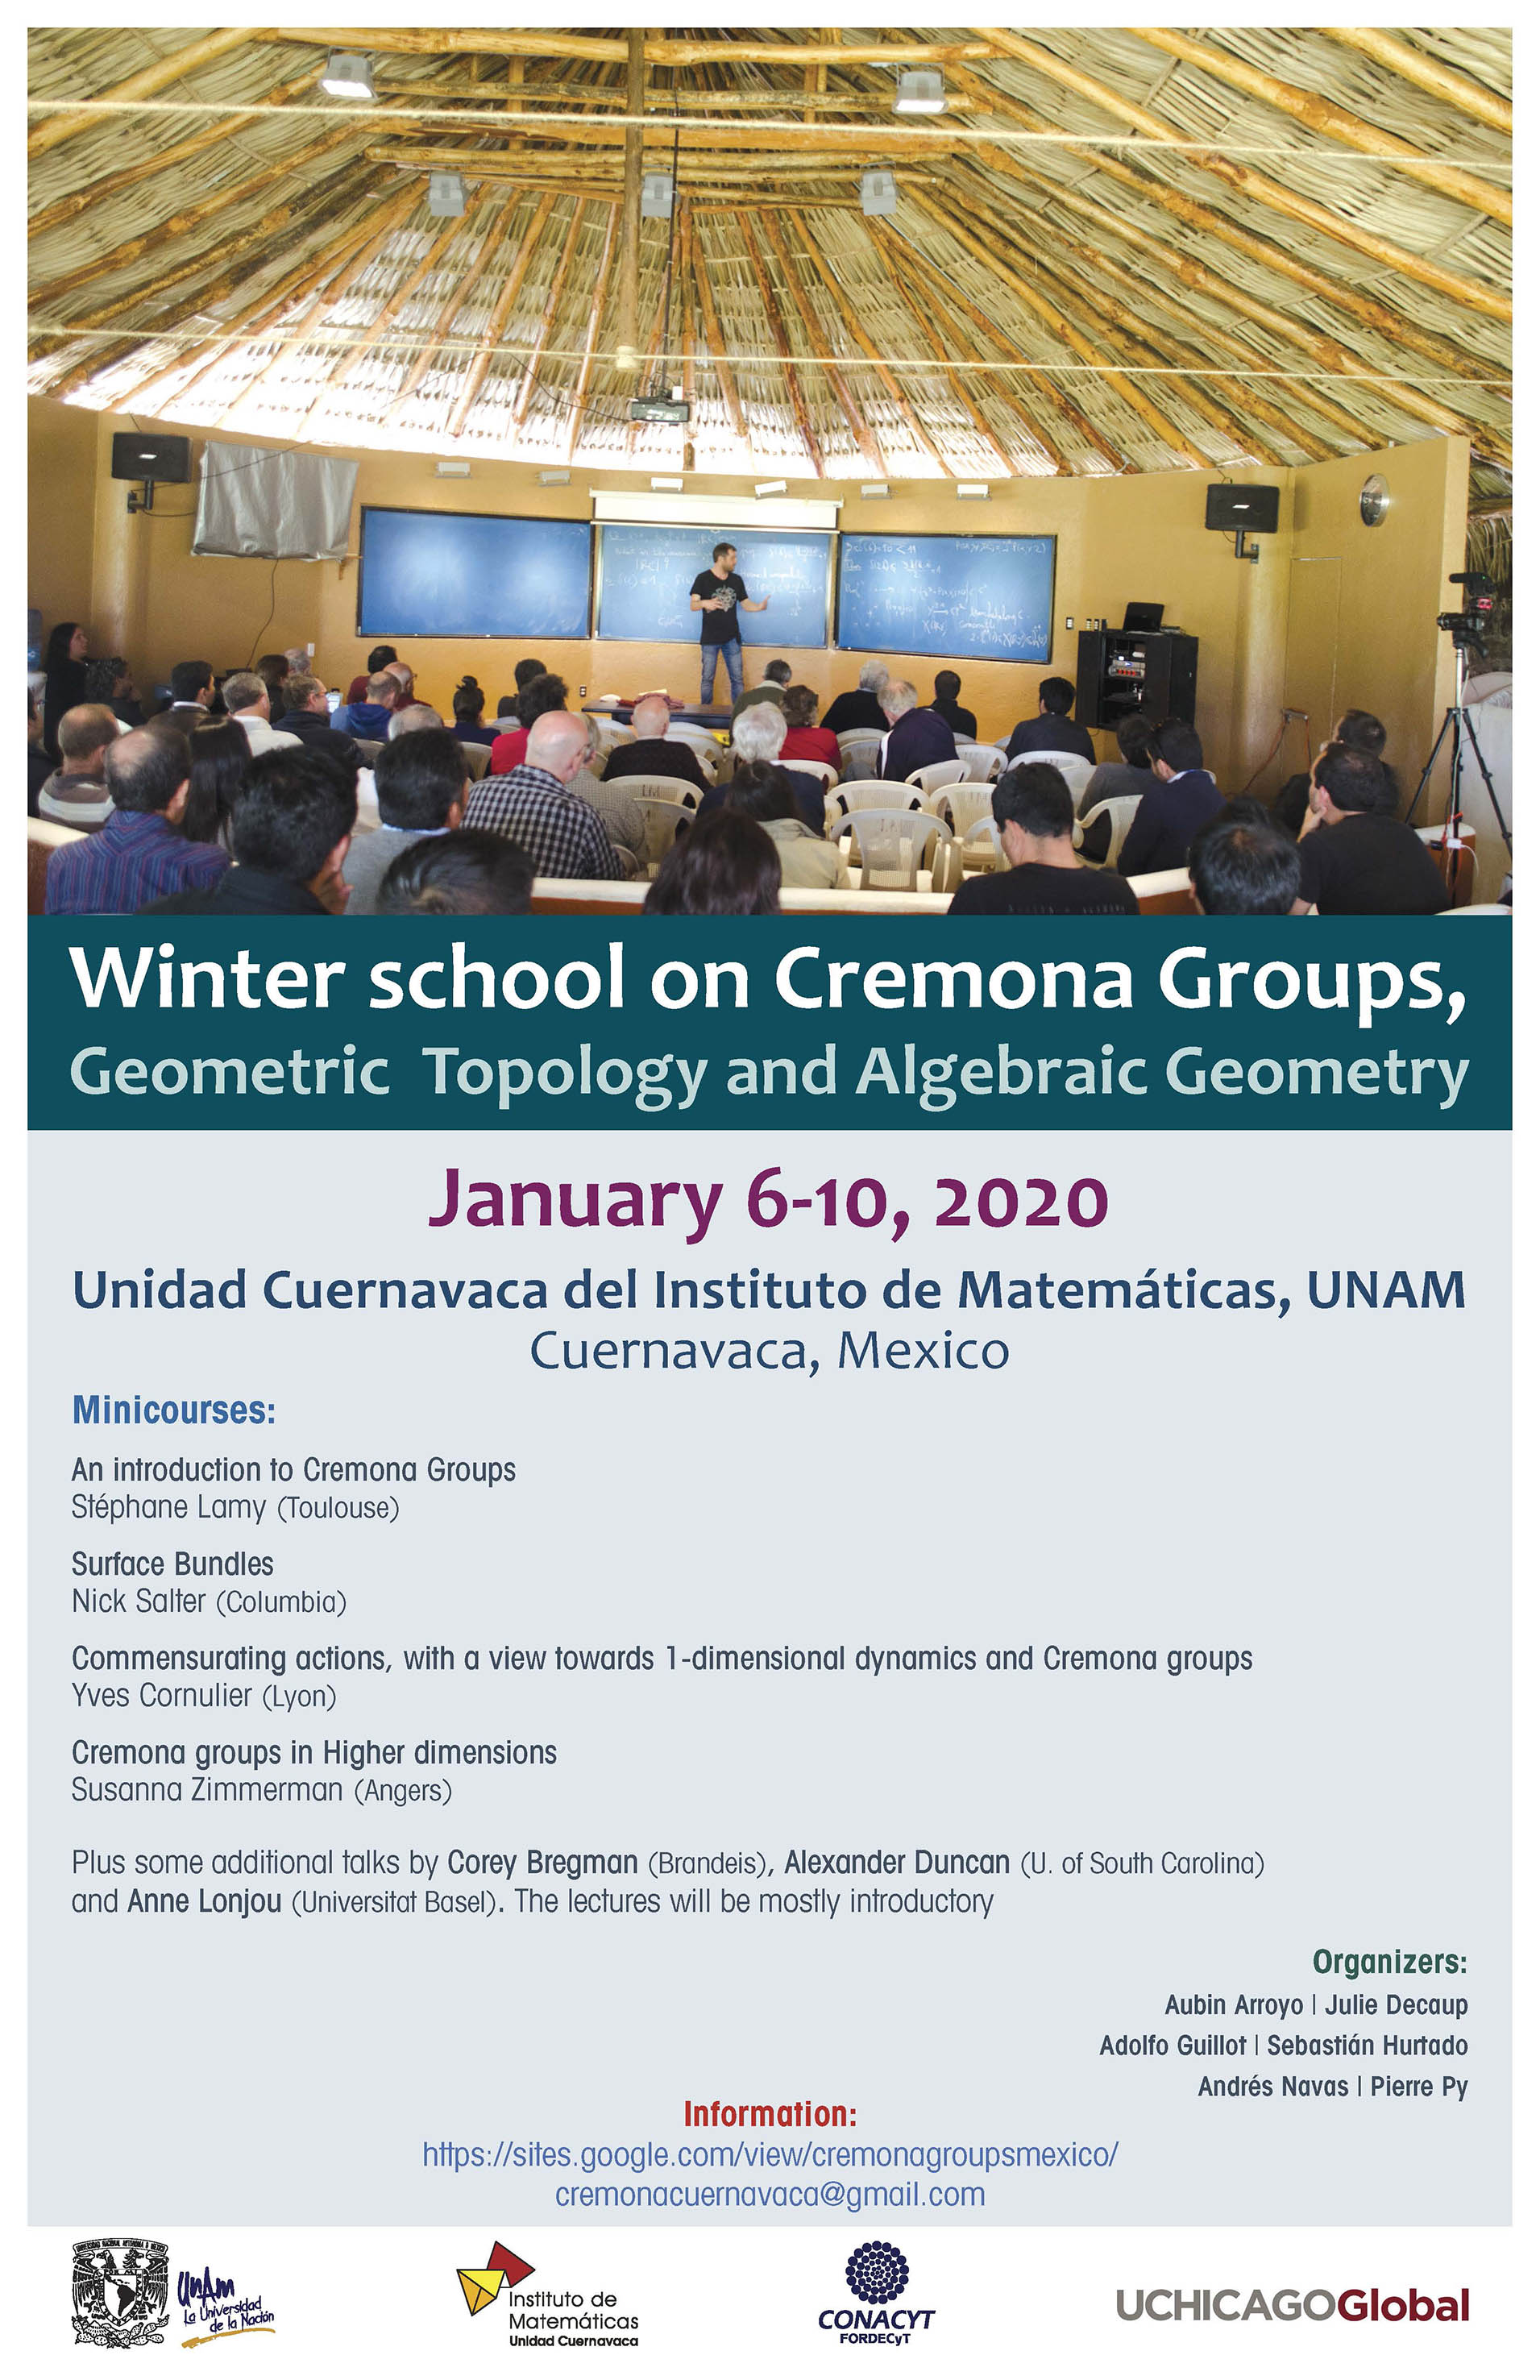 Escuela de invierno en Grupos de Cremona, Topología Geométrica y Geometría Algebraica